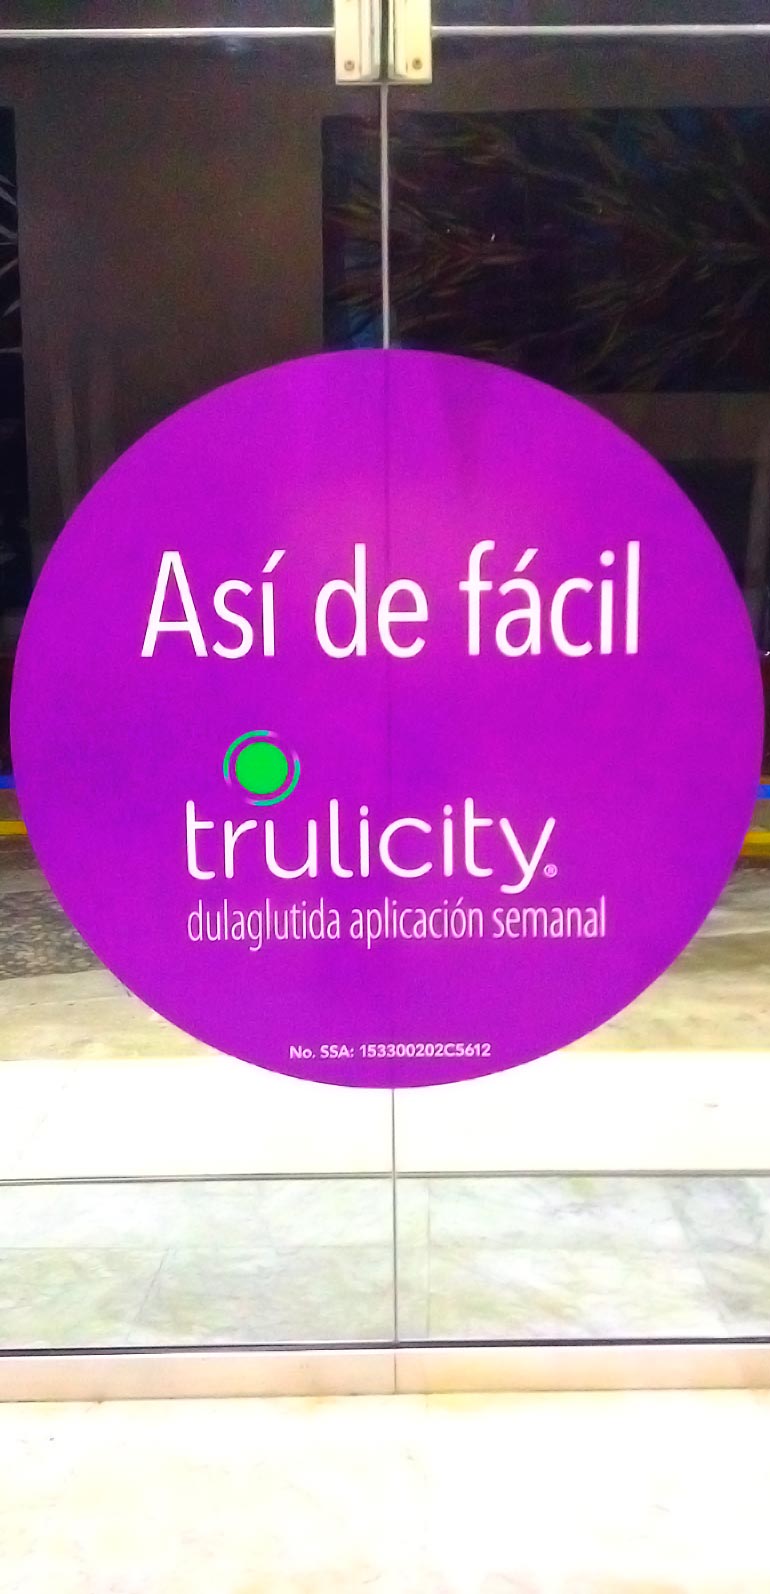 SATmexico-dmc-meetings-events-guadalajara-branding-door-lilly-trulicity